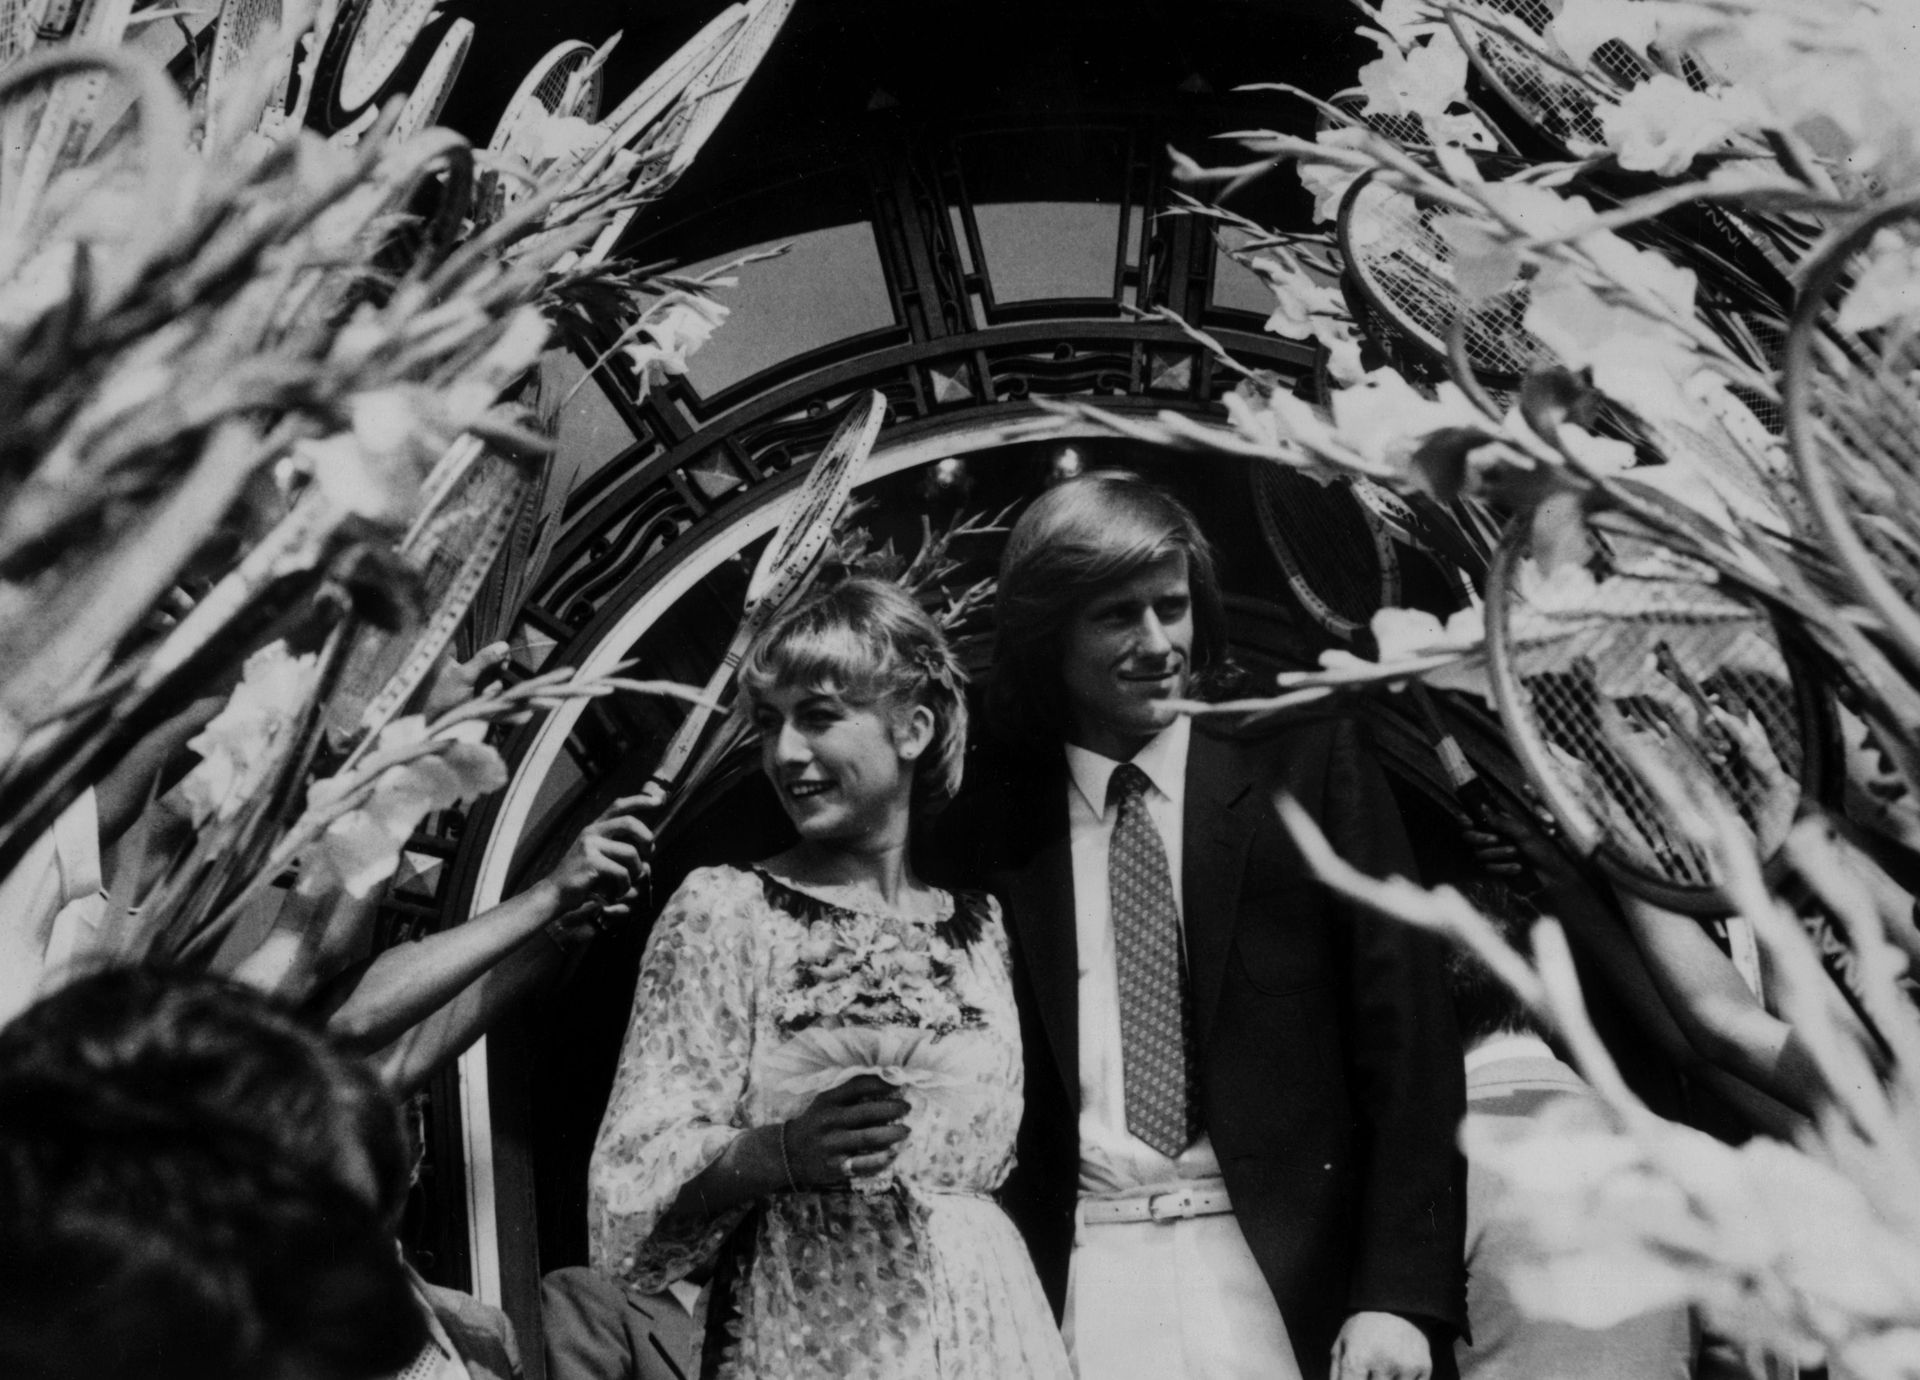 Юли 1980 г., Букурещ. Борг се жени за Мариана Симионеску, също тенисистка. Бракът не завършва добре и 4 години по-късно идва развод, а отношенията им са хладни